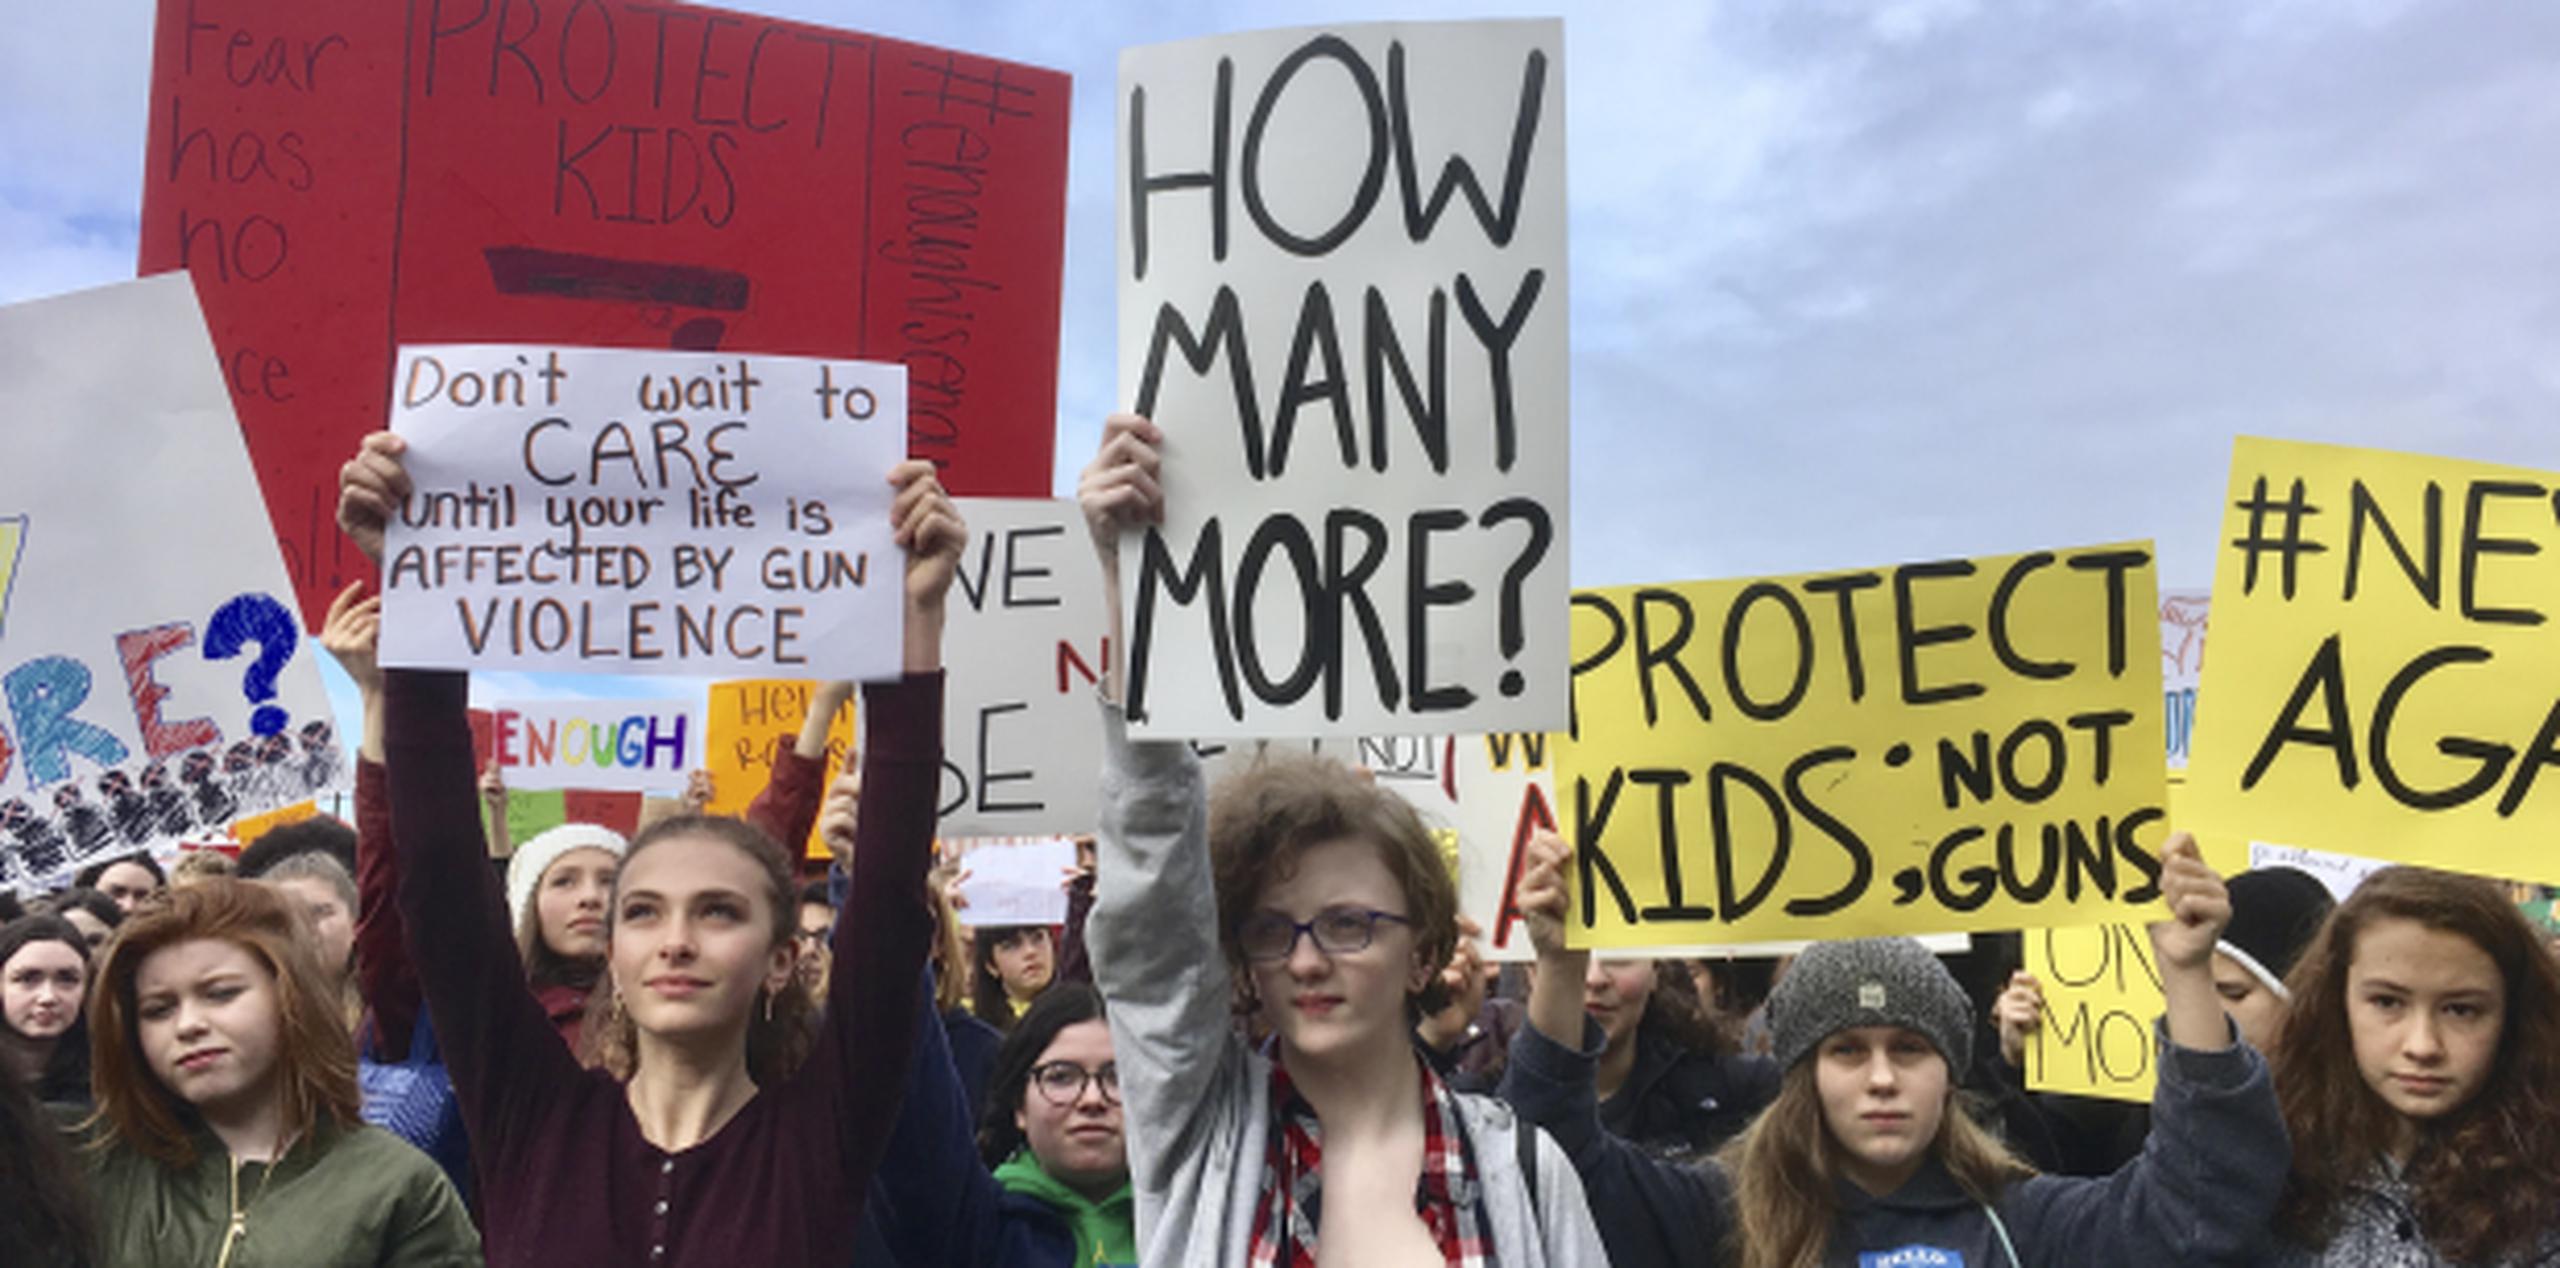 El pasado 14 de marzo estudiantes de la escuela superior Roosevelt participaron en una protesta contra la violencia armada en Seattle. (AP)